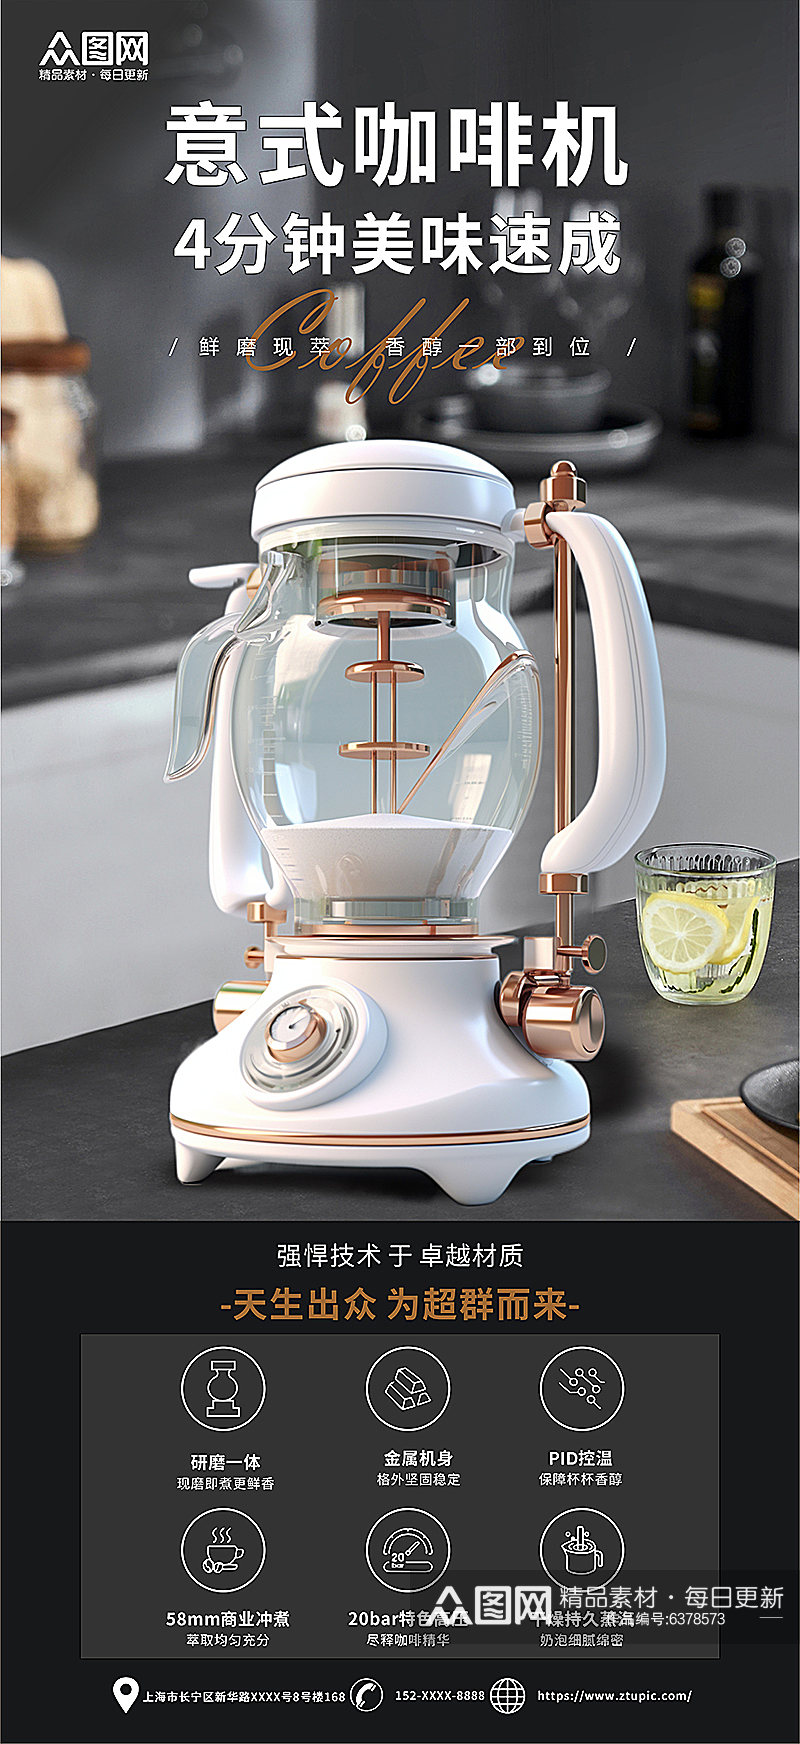 高端电器咖啡机产品促销海报素材